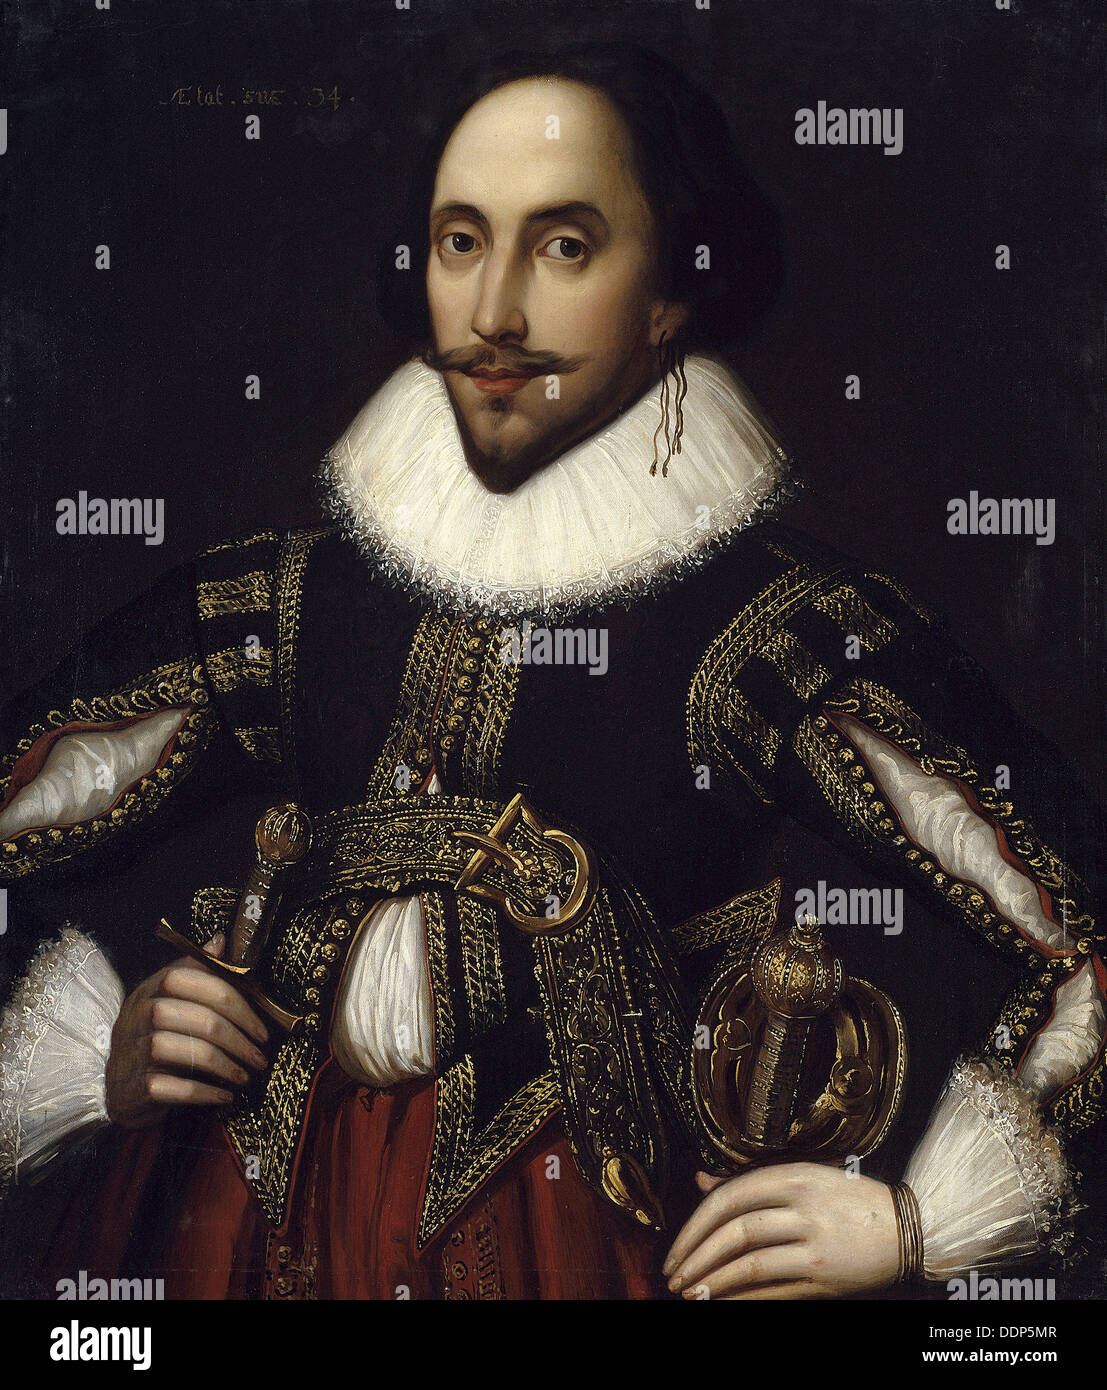 Anonyme - Portrait de William Shakespeare - musée de Versailles Banque D'Images